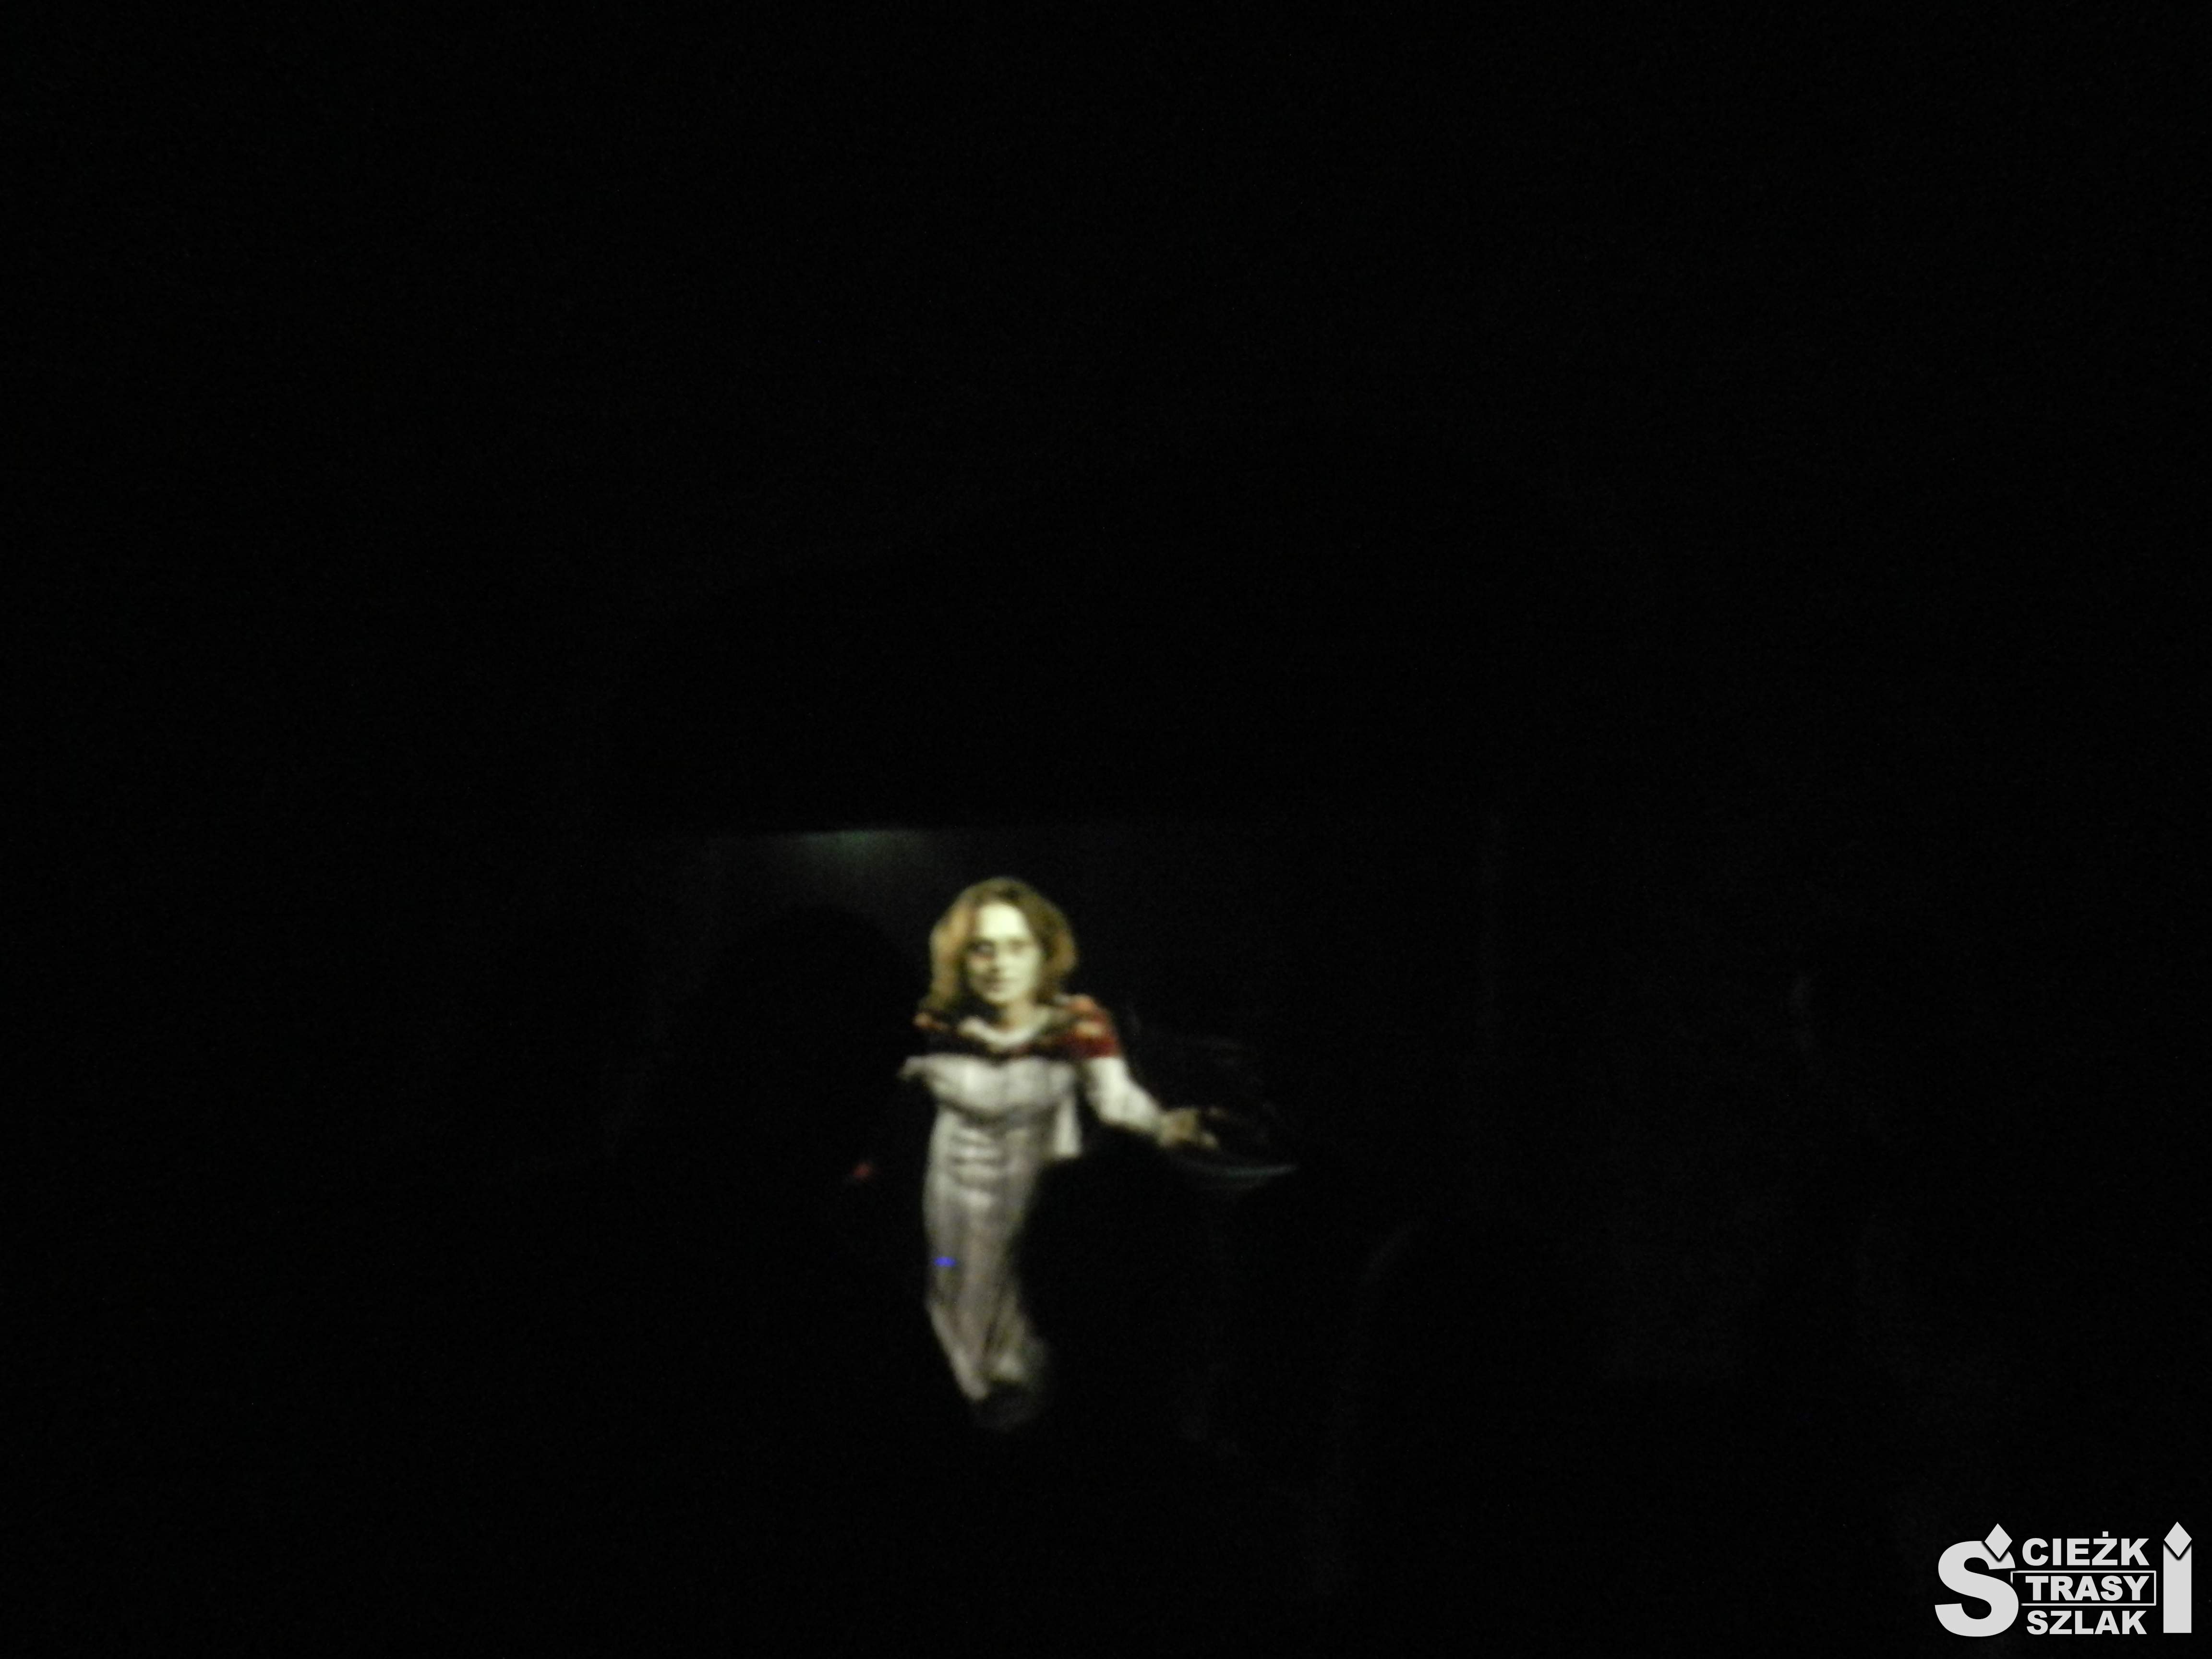 Projekcja ducha Gertrudy wyświetlana w ciemnym tunelu sztolni Gertruda